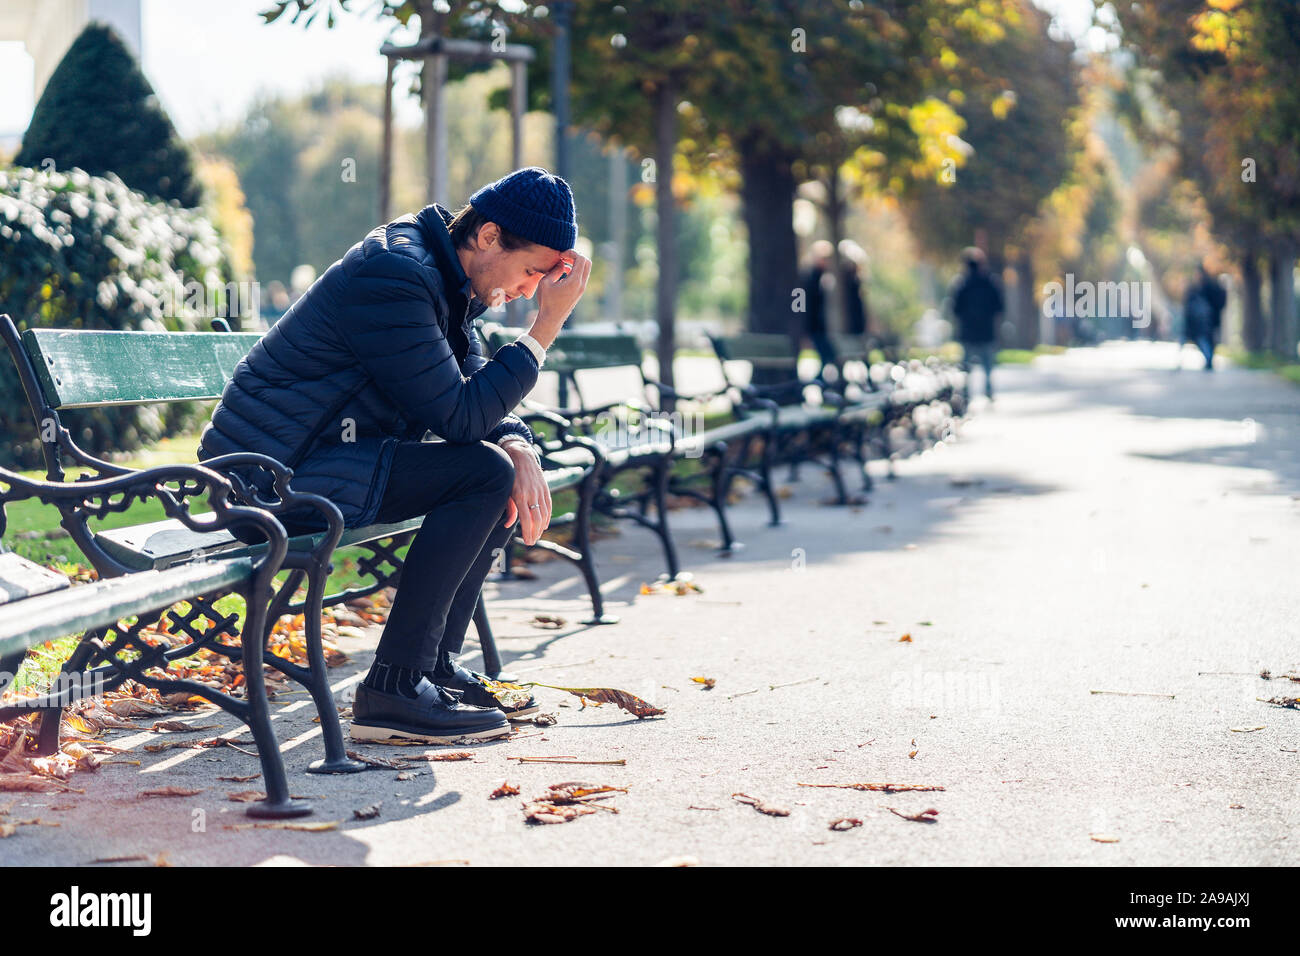 Junge besorgt, der Mensch ist in seinem Gesicht. Er sitzt auf einer Bank während der sonnigen Herbsttag. Stockfoto